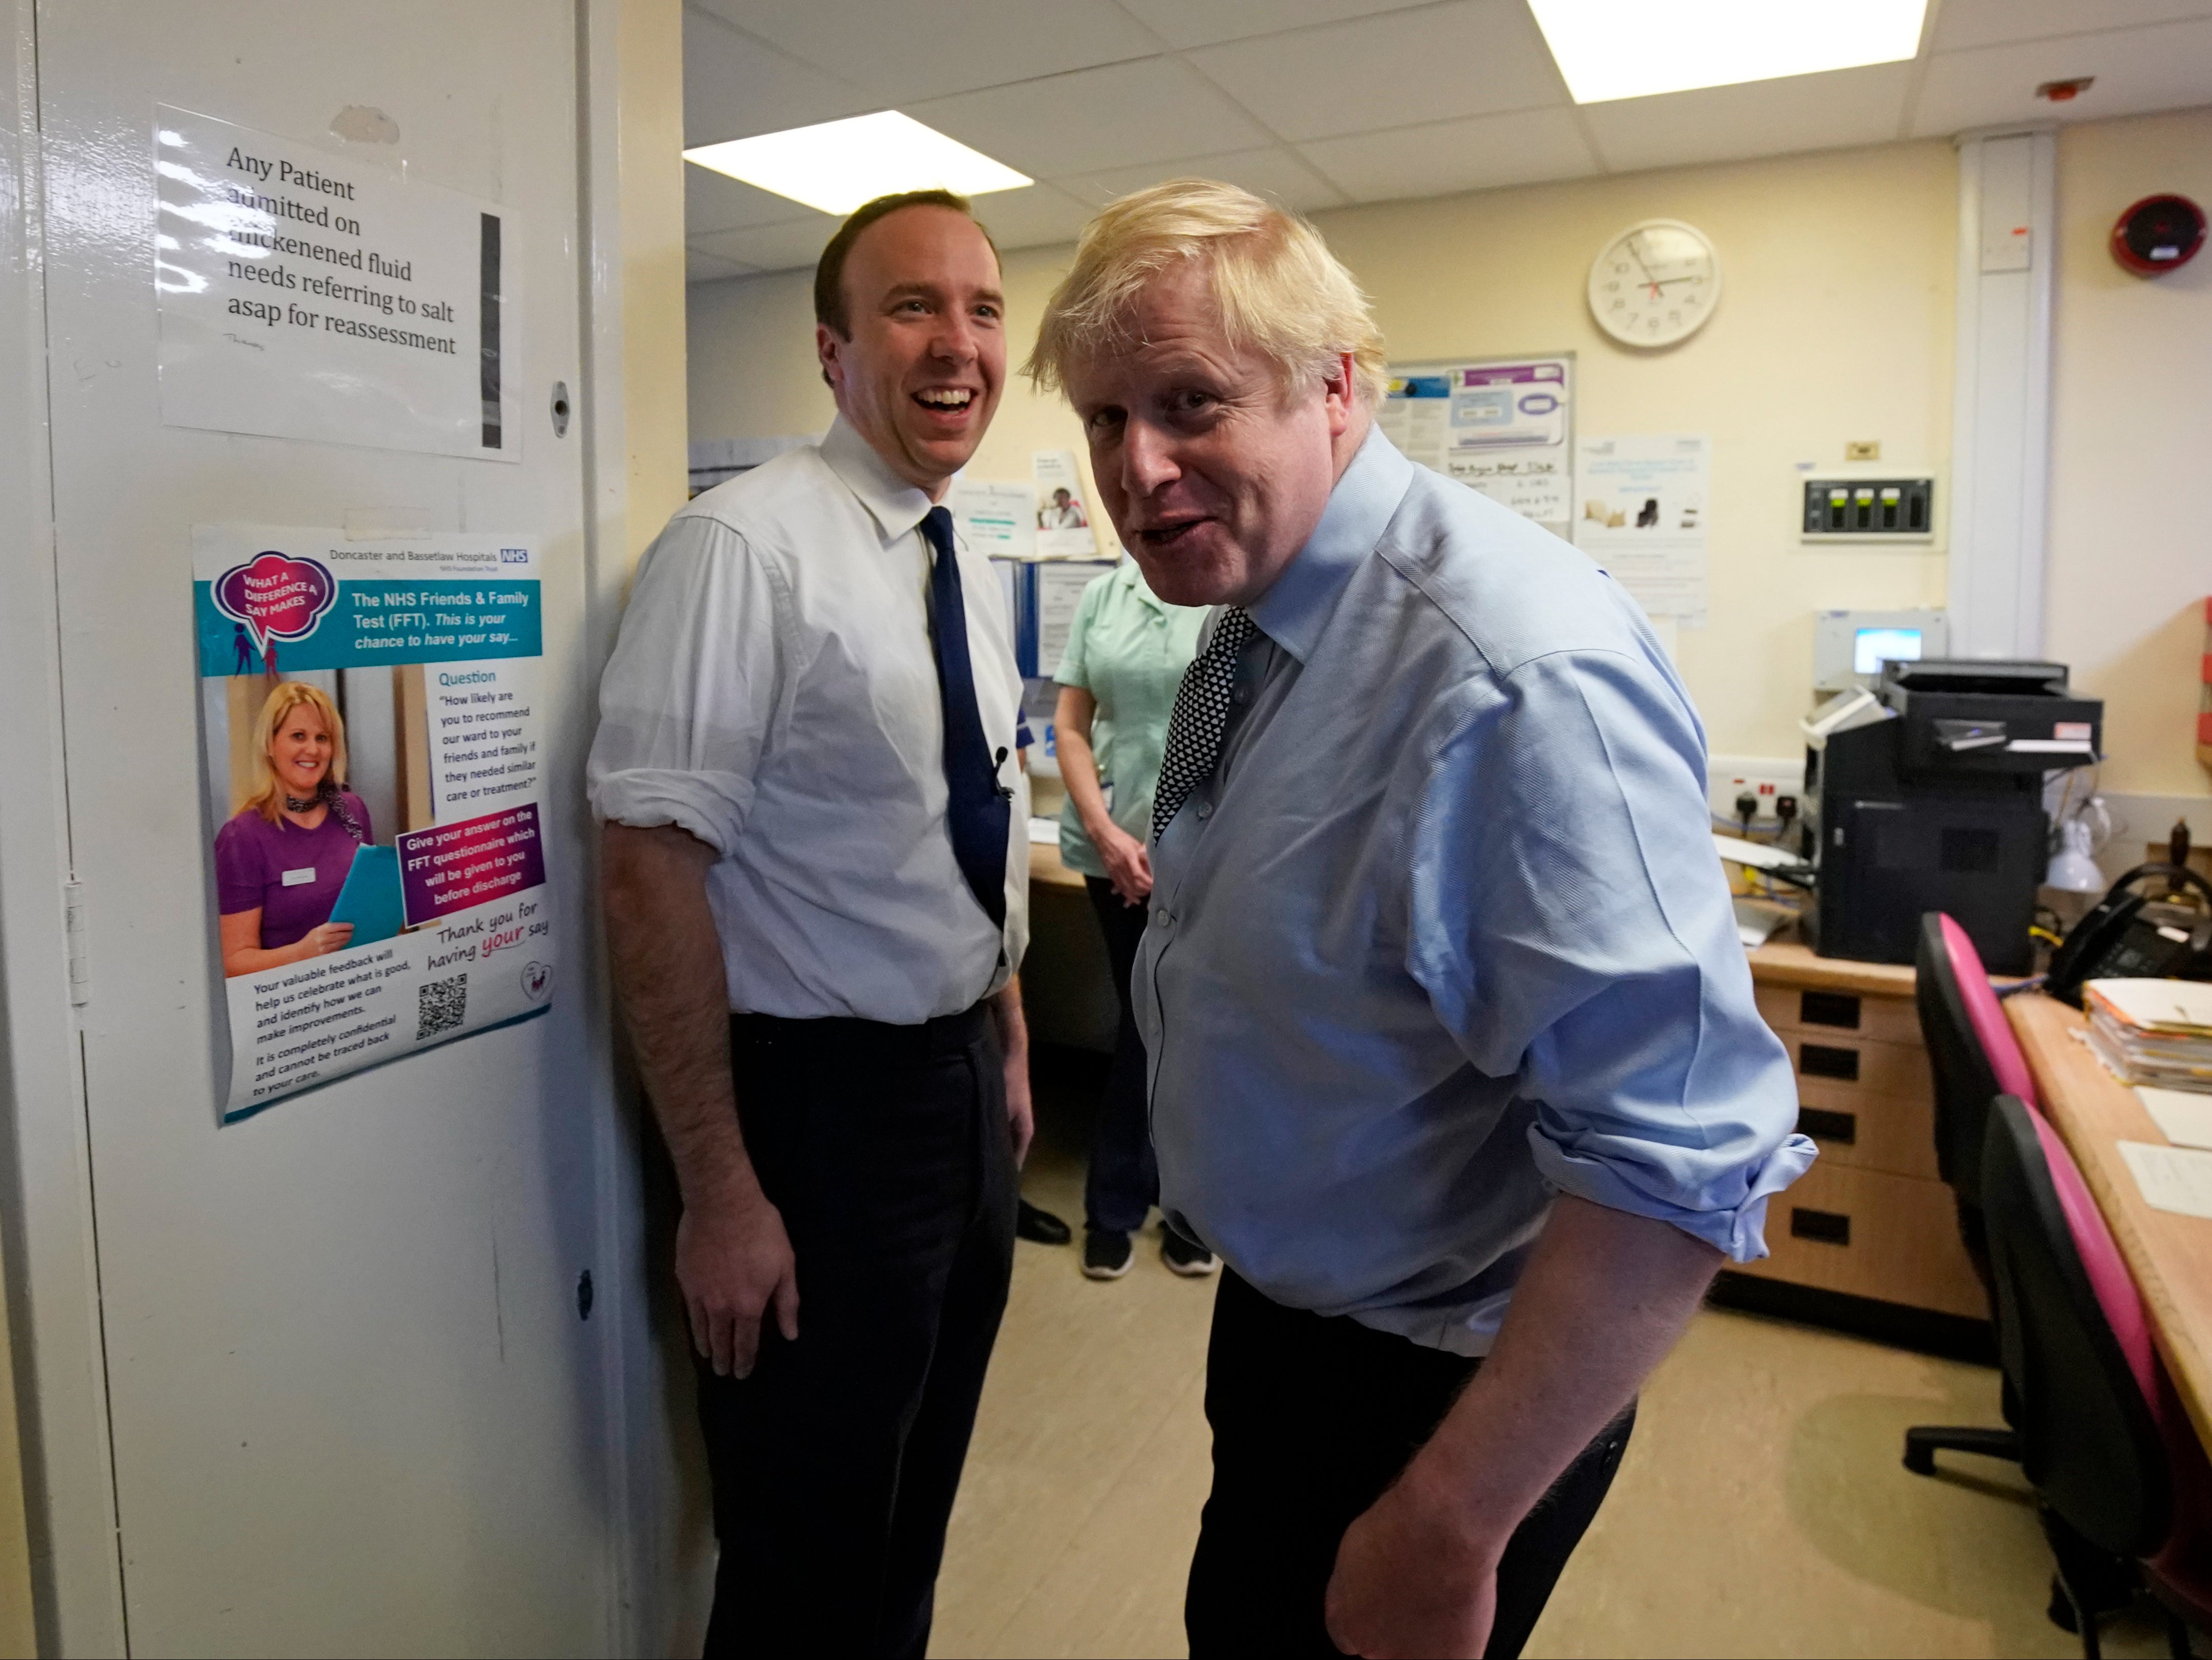 Matt Hancock and Boris Johnson on the campaign trail in November 2019